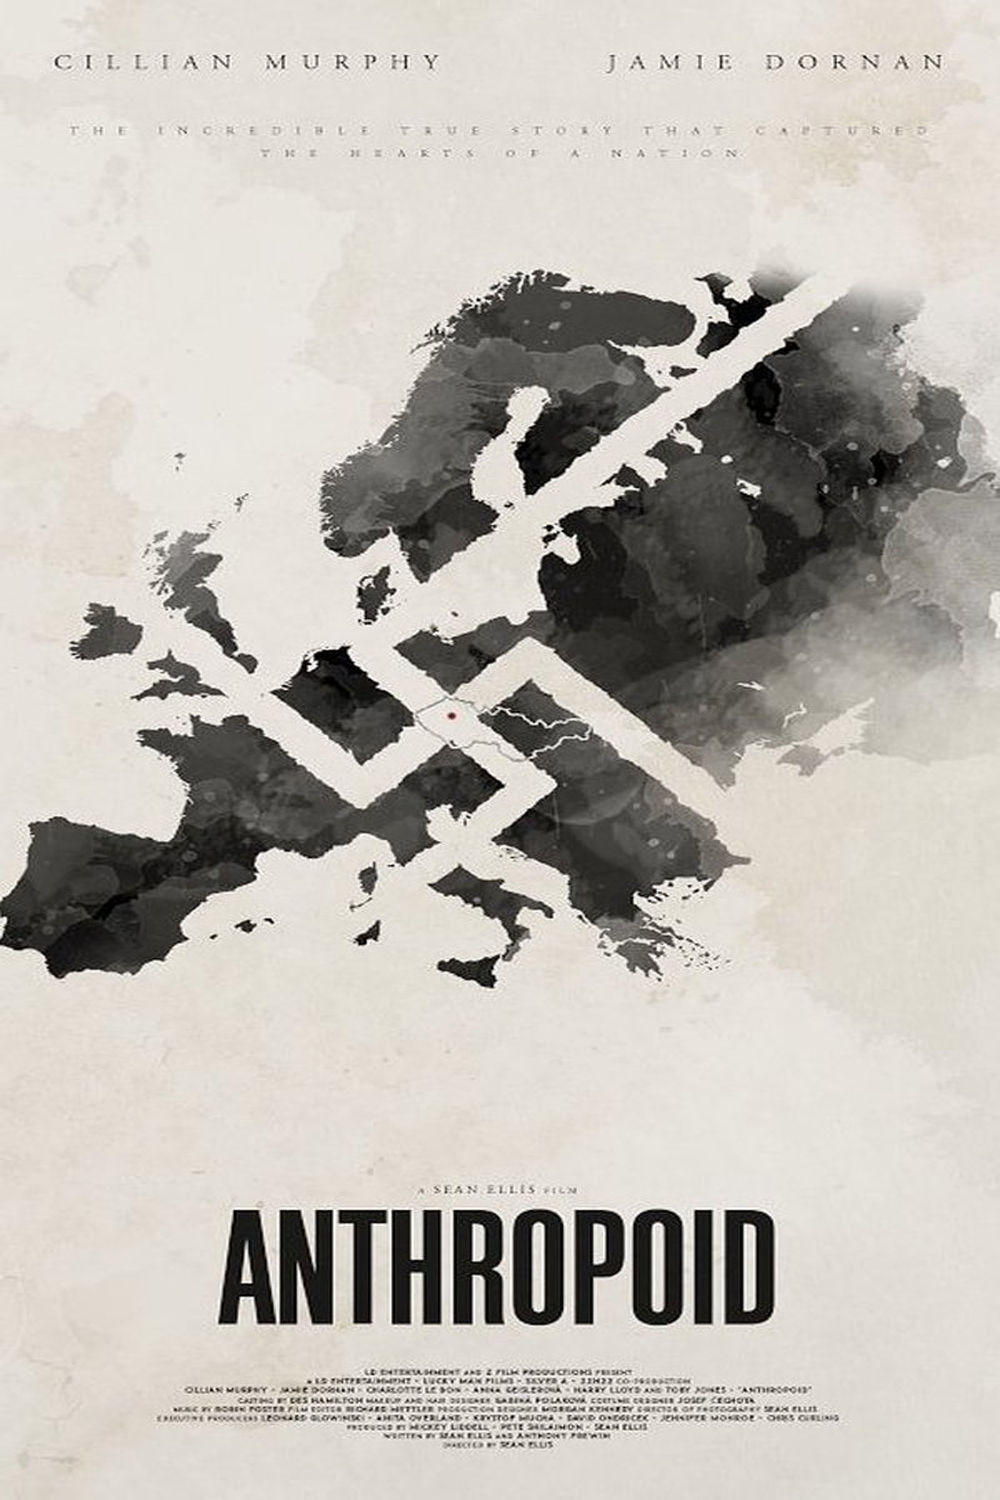 2016 Anthropoid